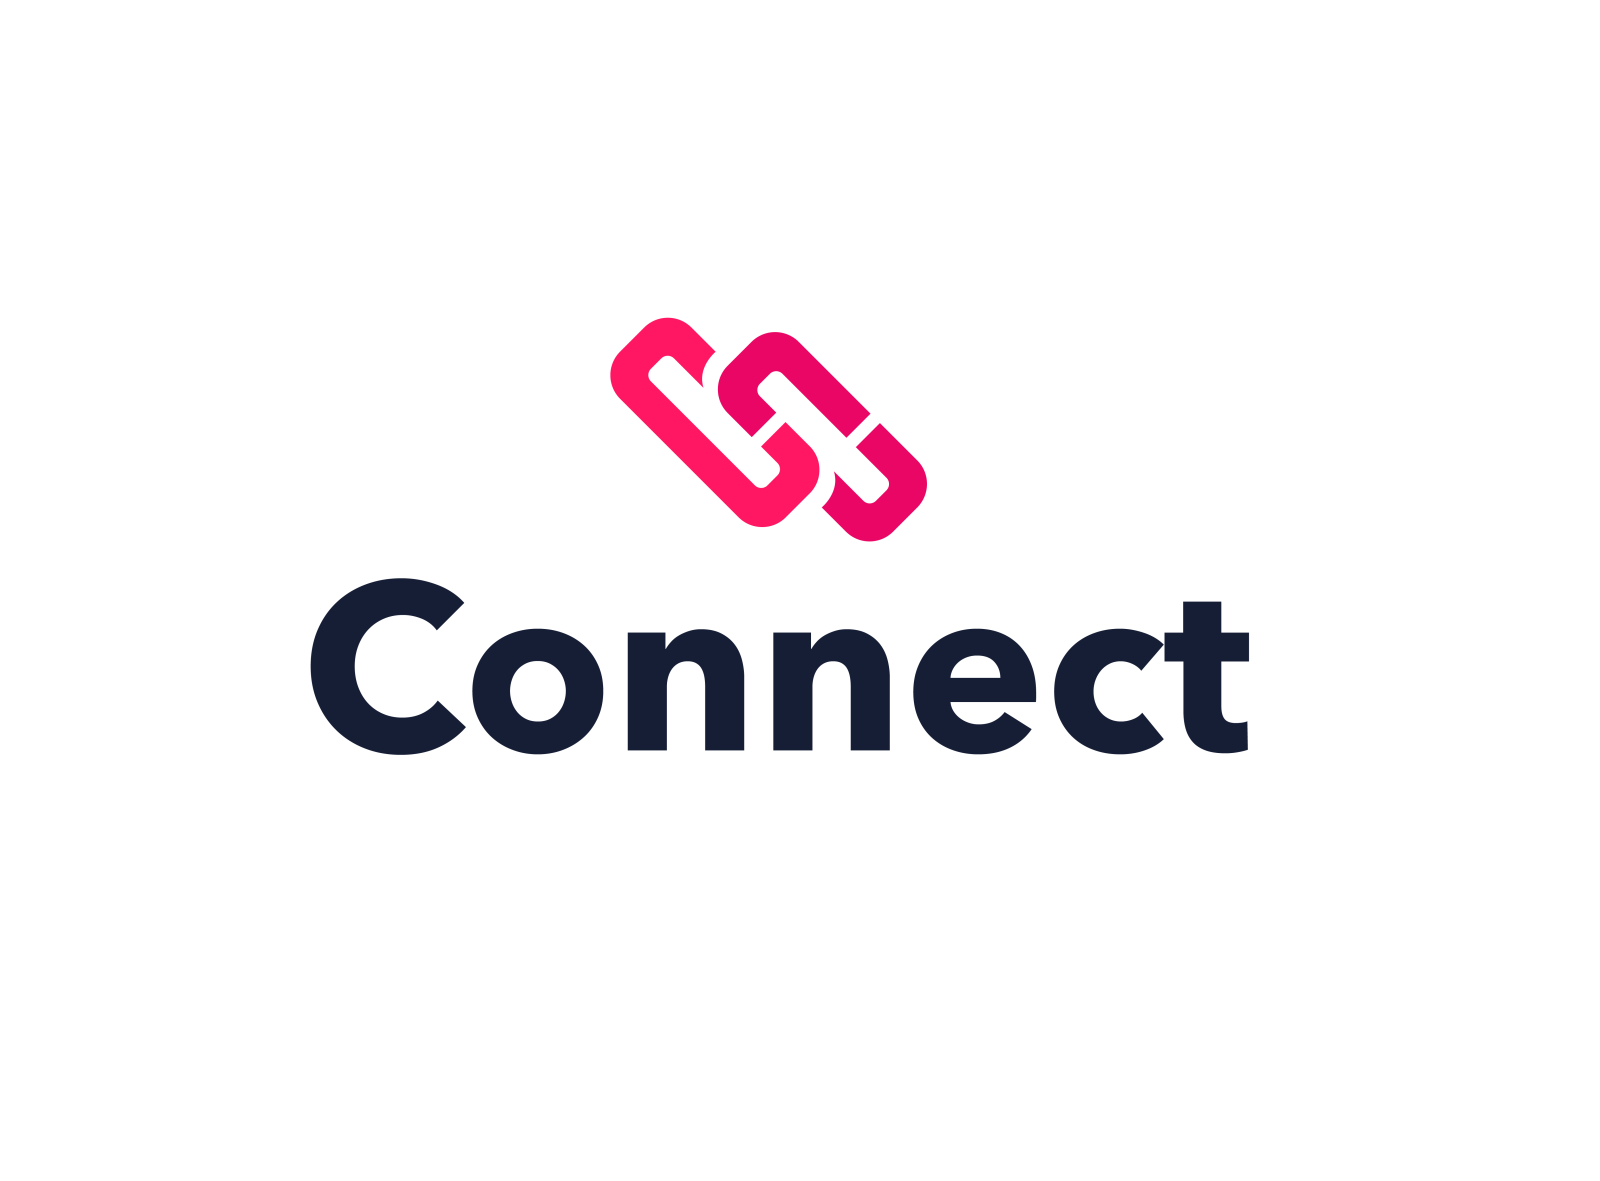 Слово connect. Коннект. Логотип on connect. ONCONNECT логотип. Direct connect лого.